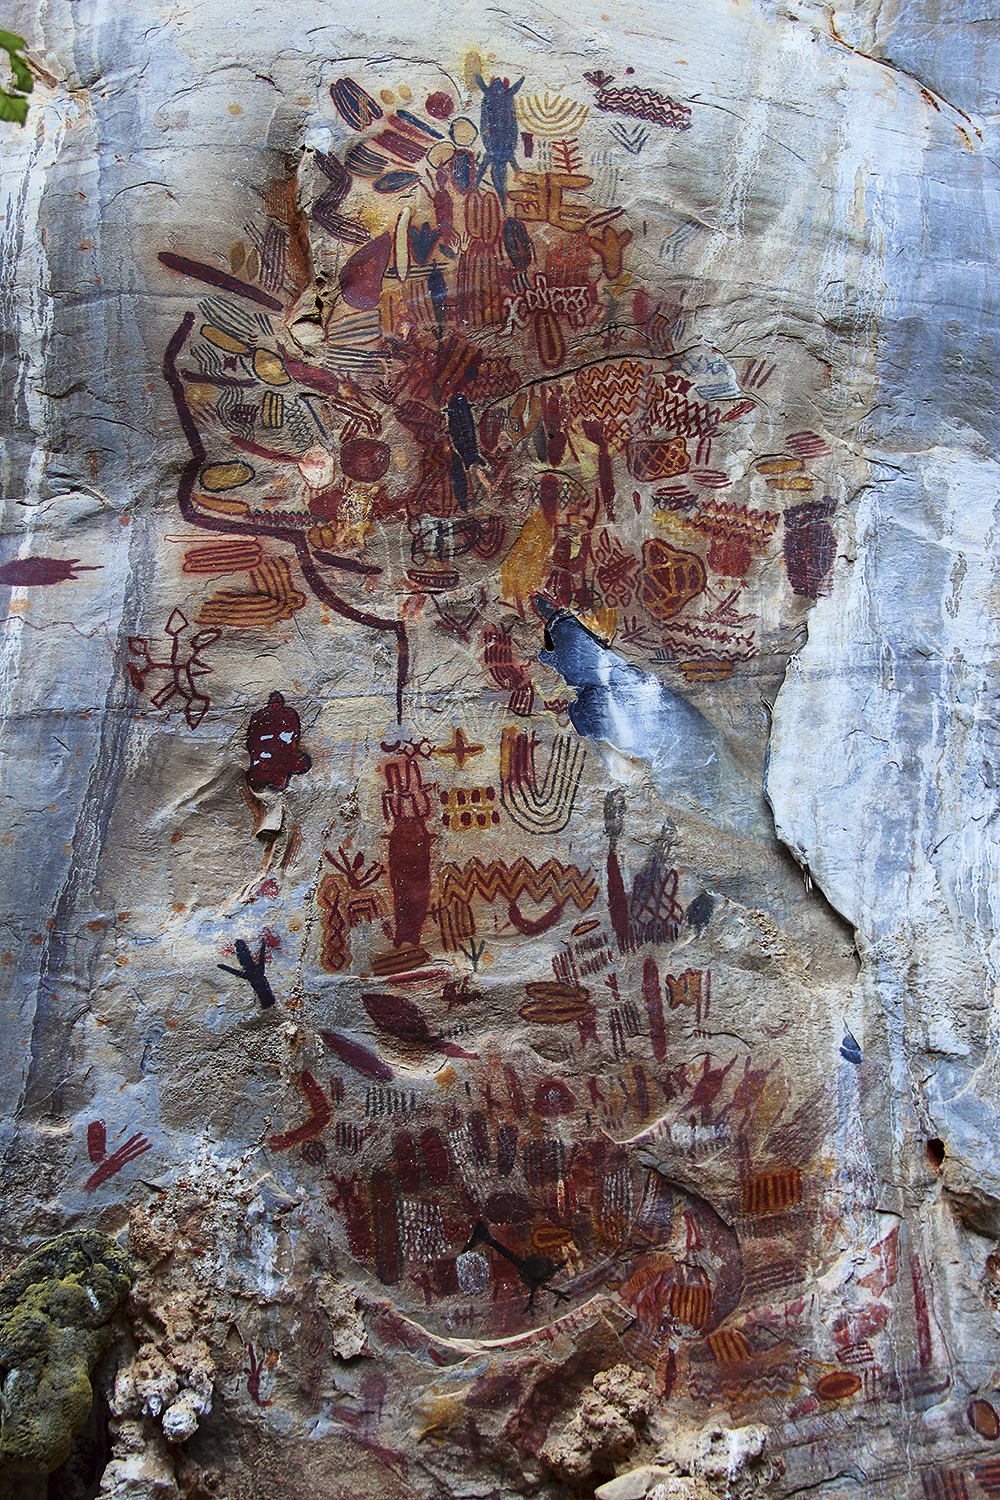 NA CAVERNA - Pinturas rupestres no Vale do Rio Peruaçu: projeto fará datação dos registros pictóricos -